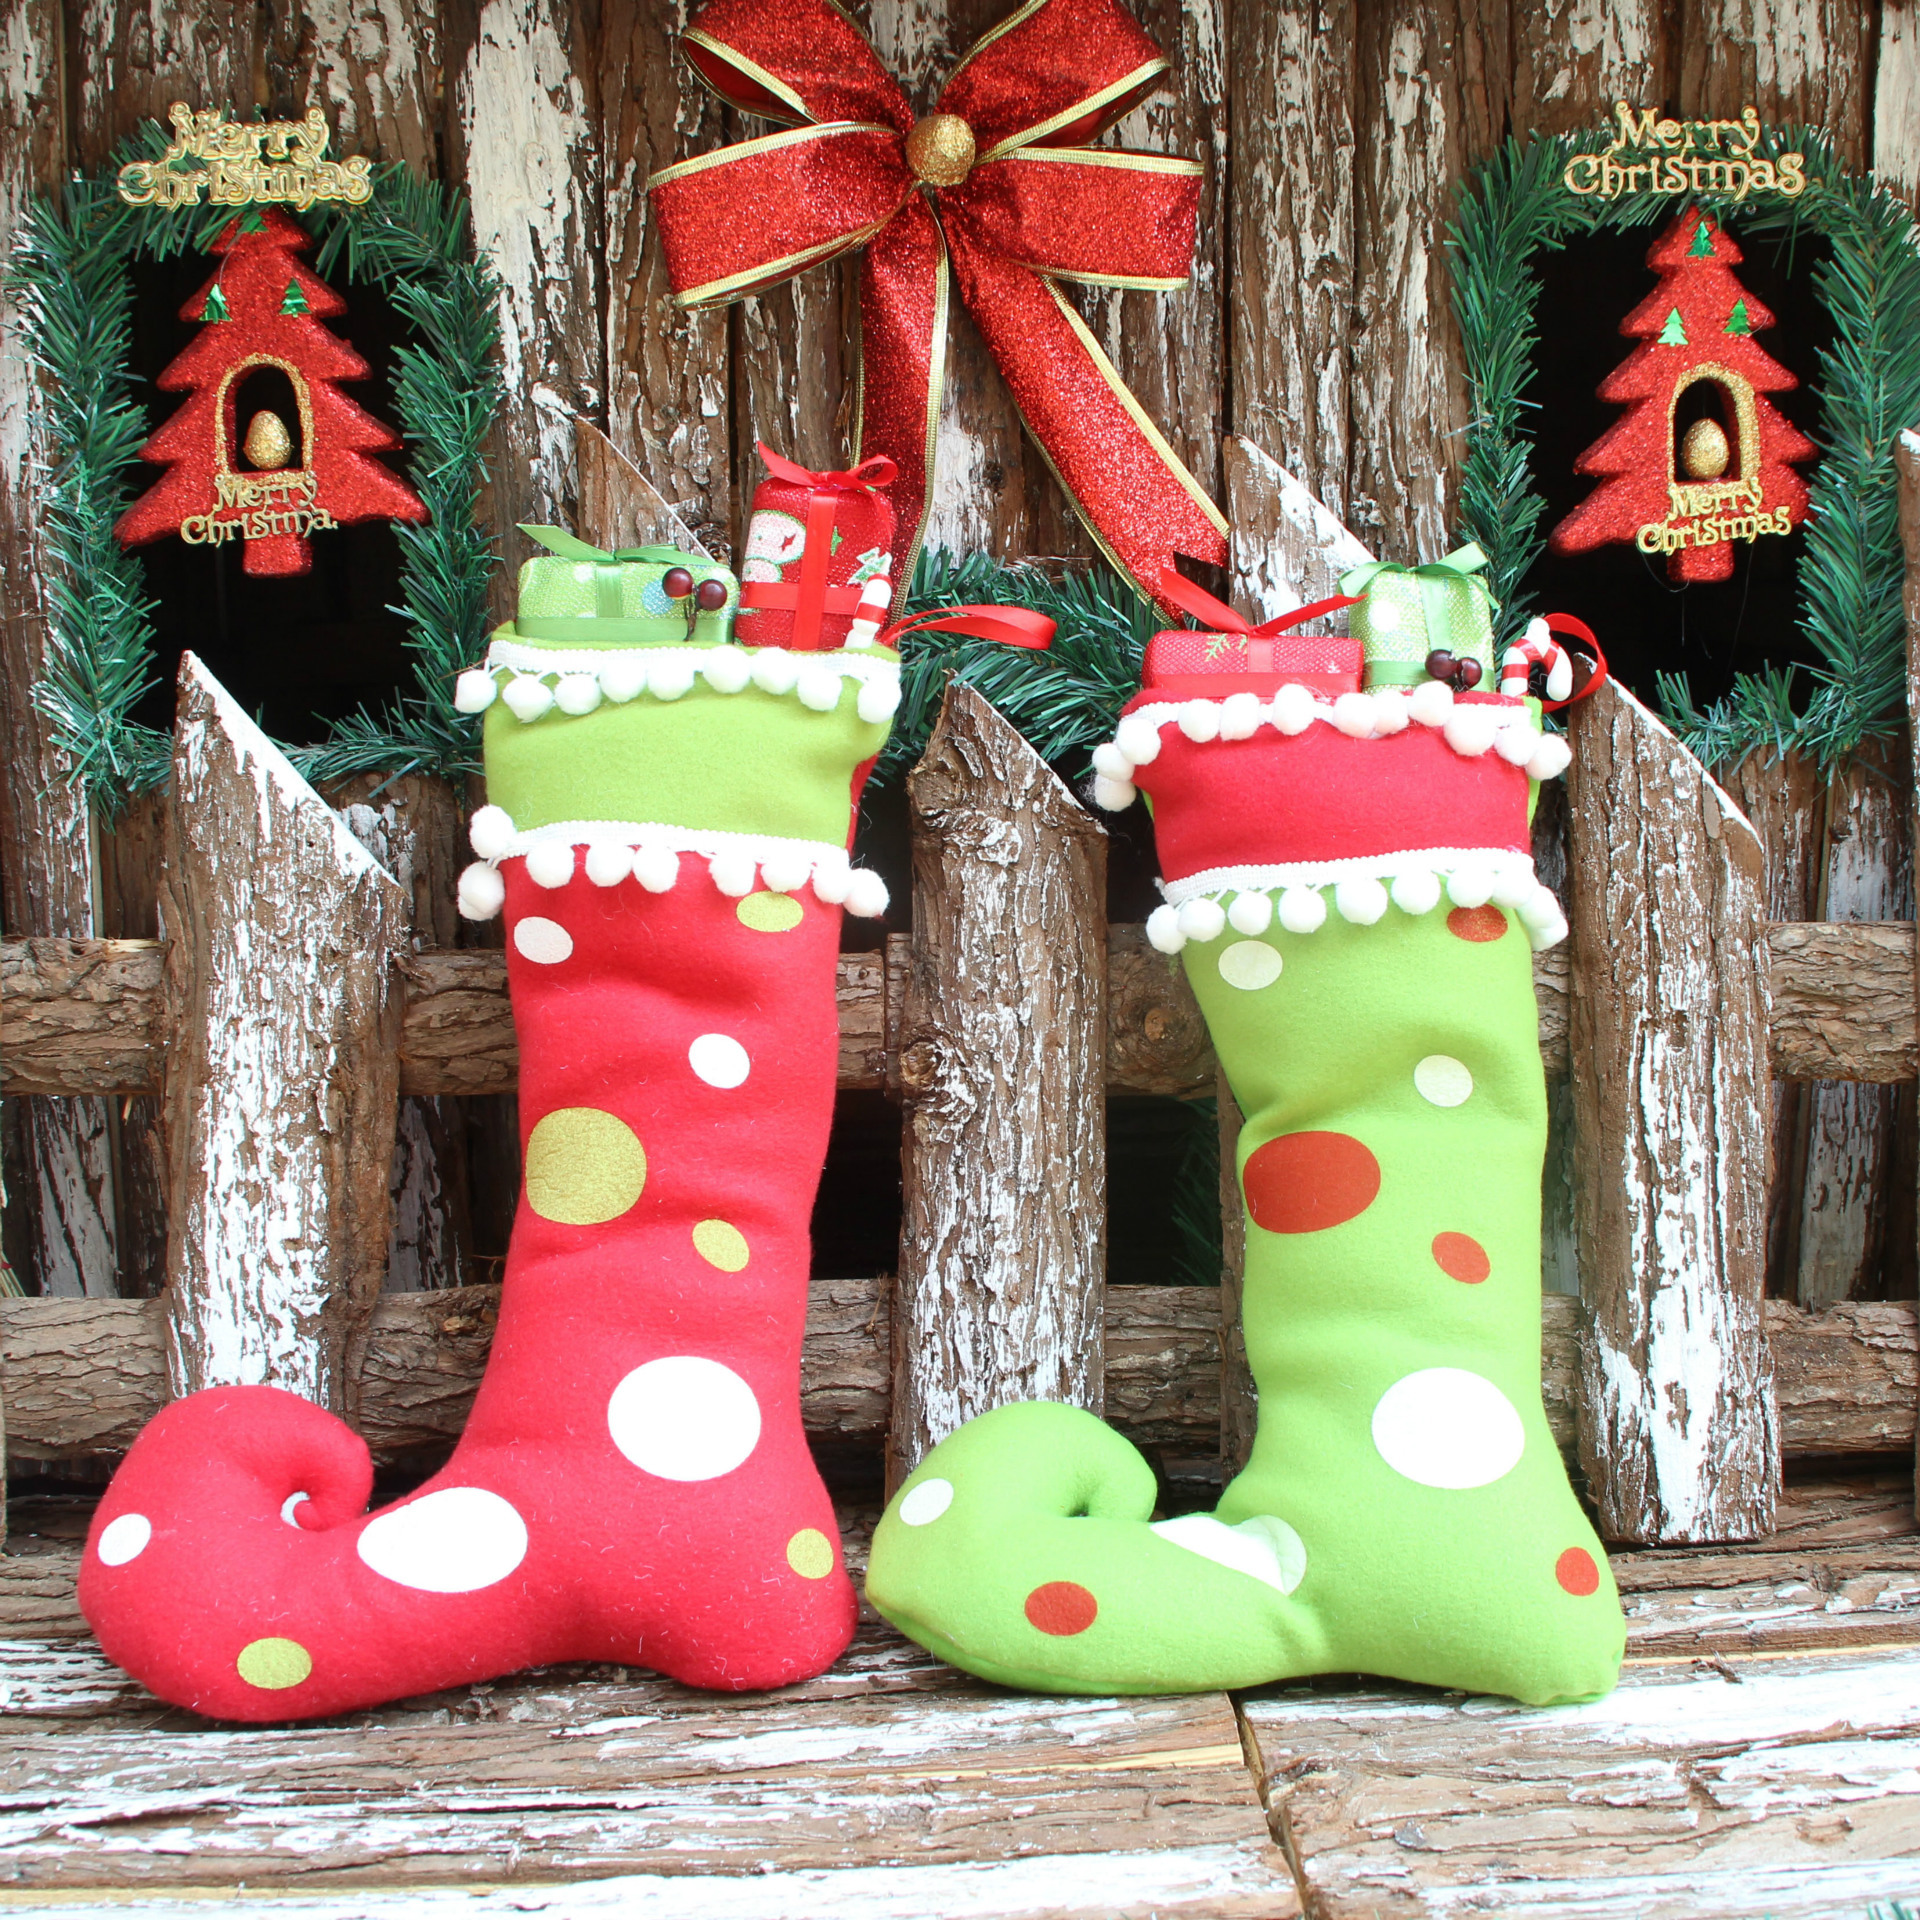 圣誕裝飾品 圣誕禮品靴 布藝靴子掛件 圣誕工藝品 家居用品